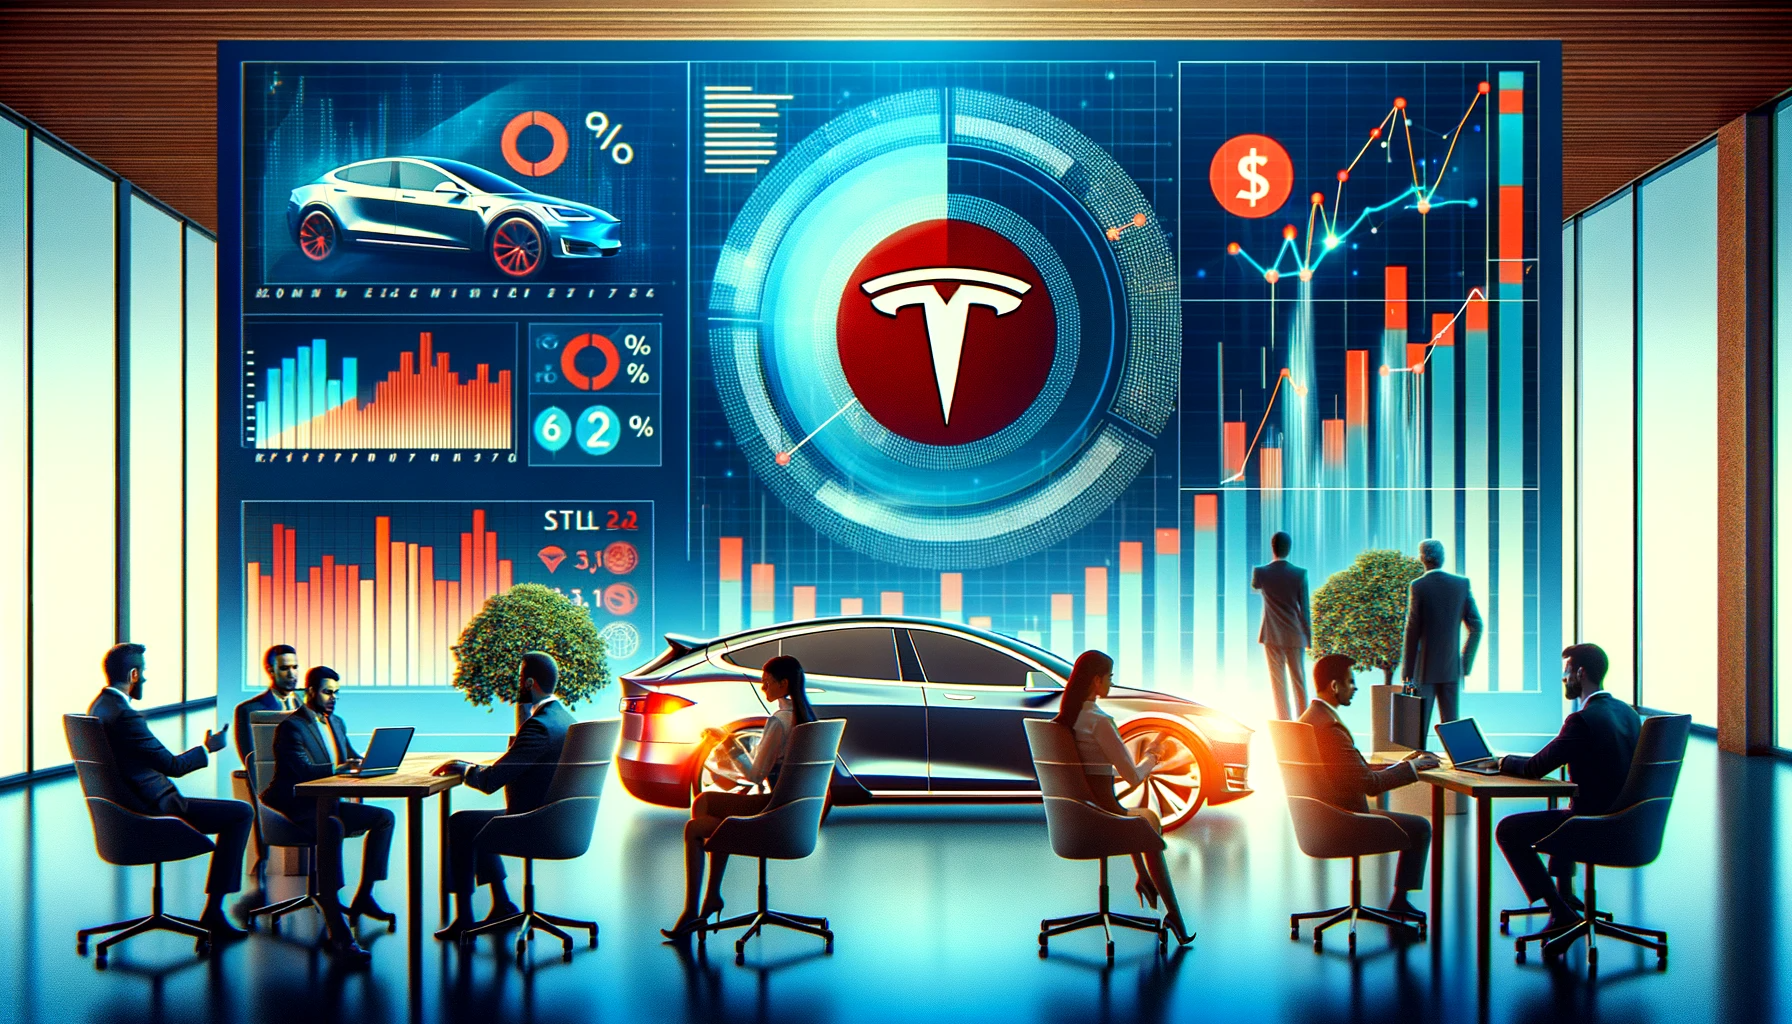 Tesla Q4 rapport - något lägre vinst än väntat